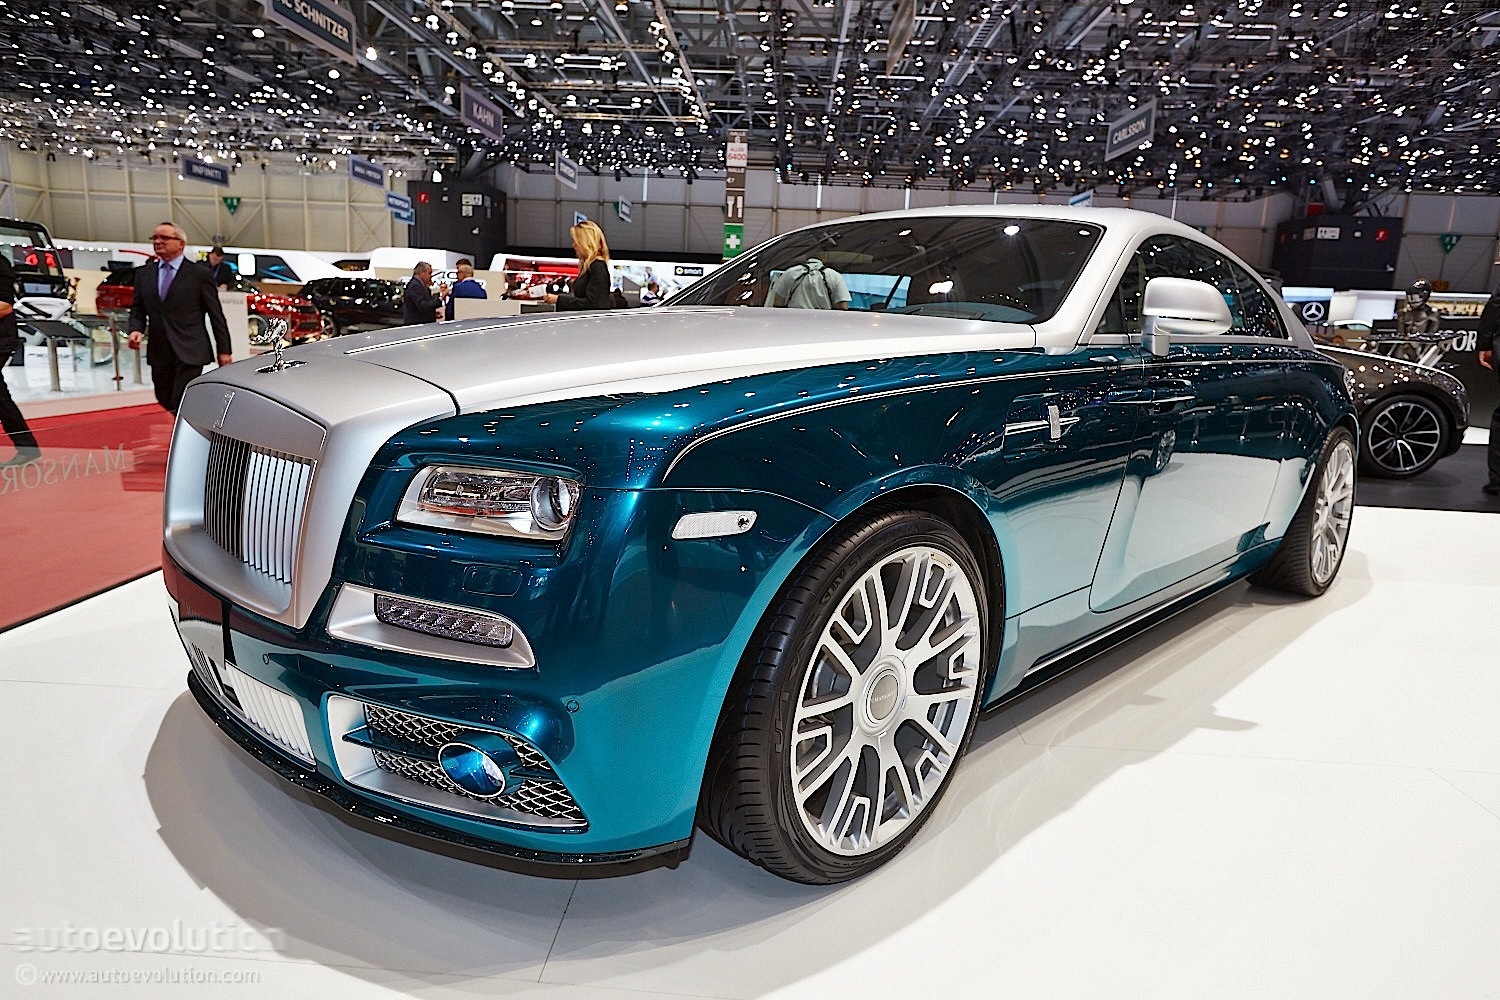 Rolls royce mansory. Rolls Royce Wraith Mansory. Rolls Royce Wraith 2020 Mansory. Машина Mansory Rolls Royce Wraith.